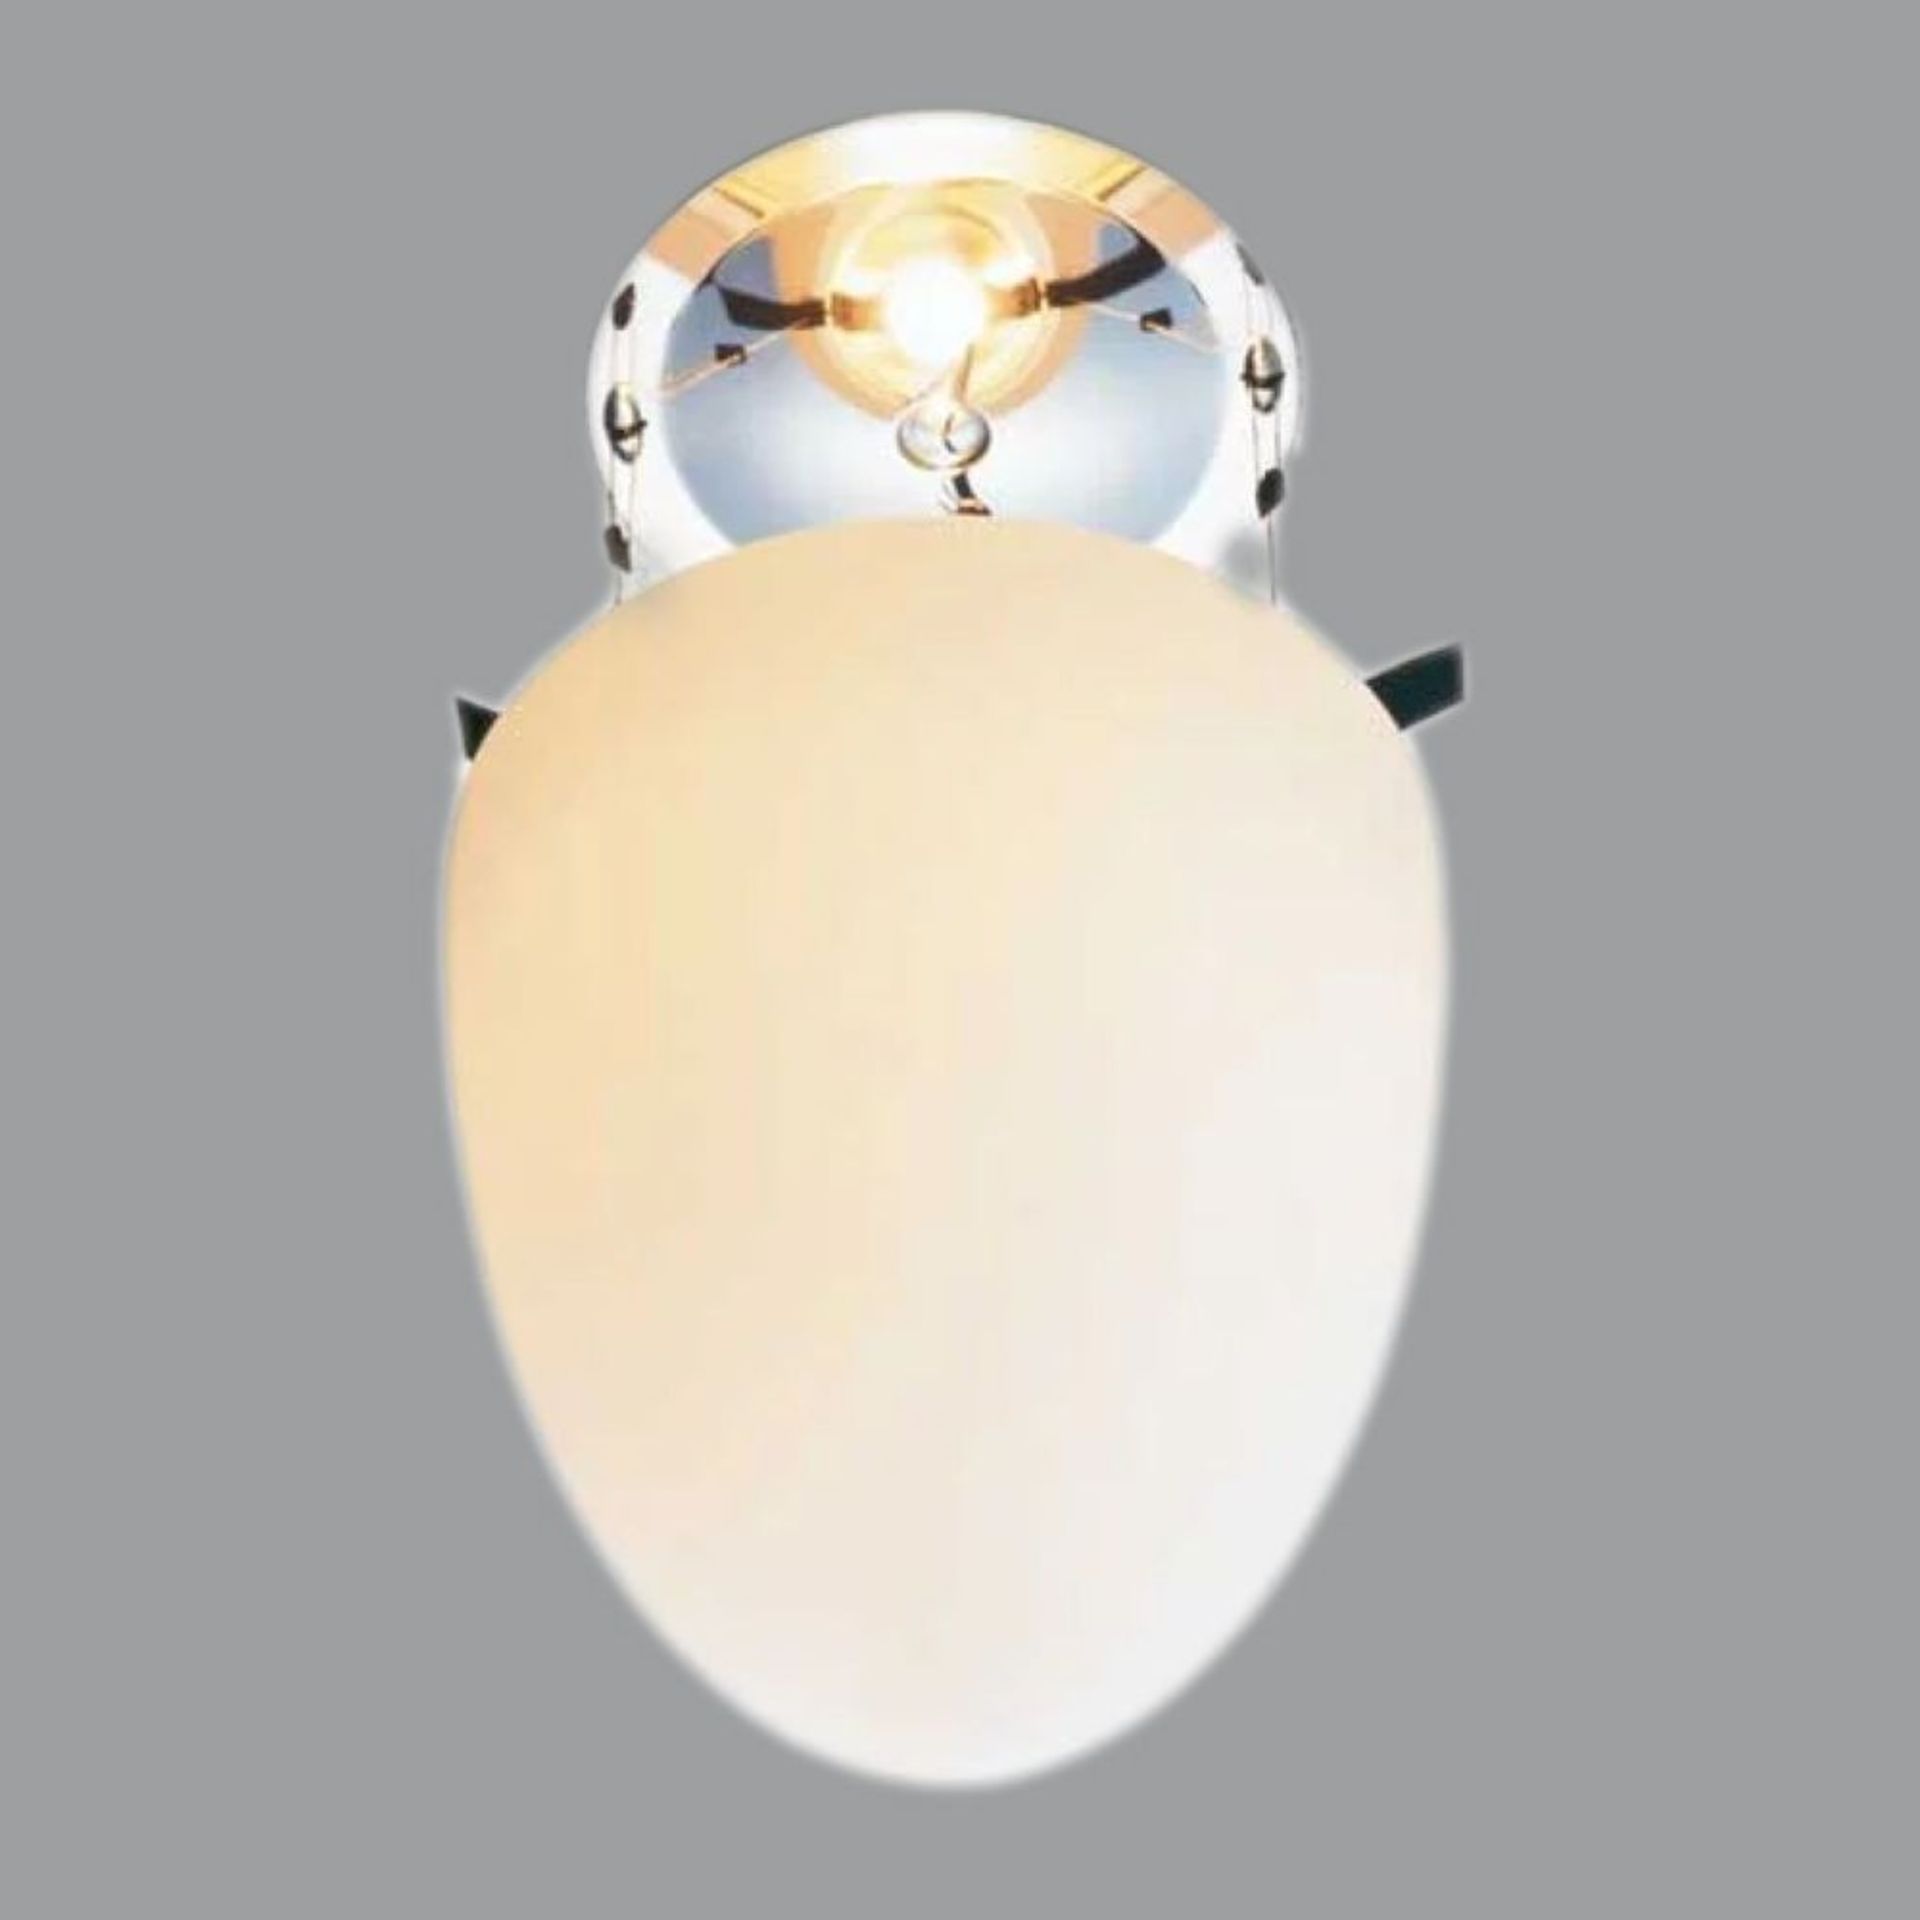 TOBIAS GRAU DeckenlampeModell ¨Body`s¨, zapfenförmiger Glaskorpus (weiß) an Metallmontur, 2